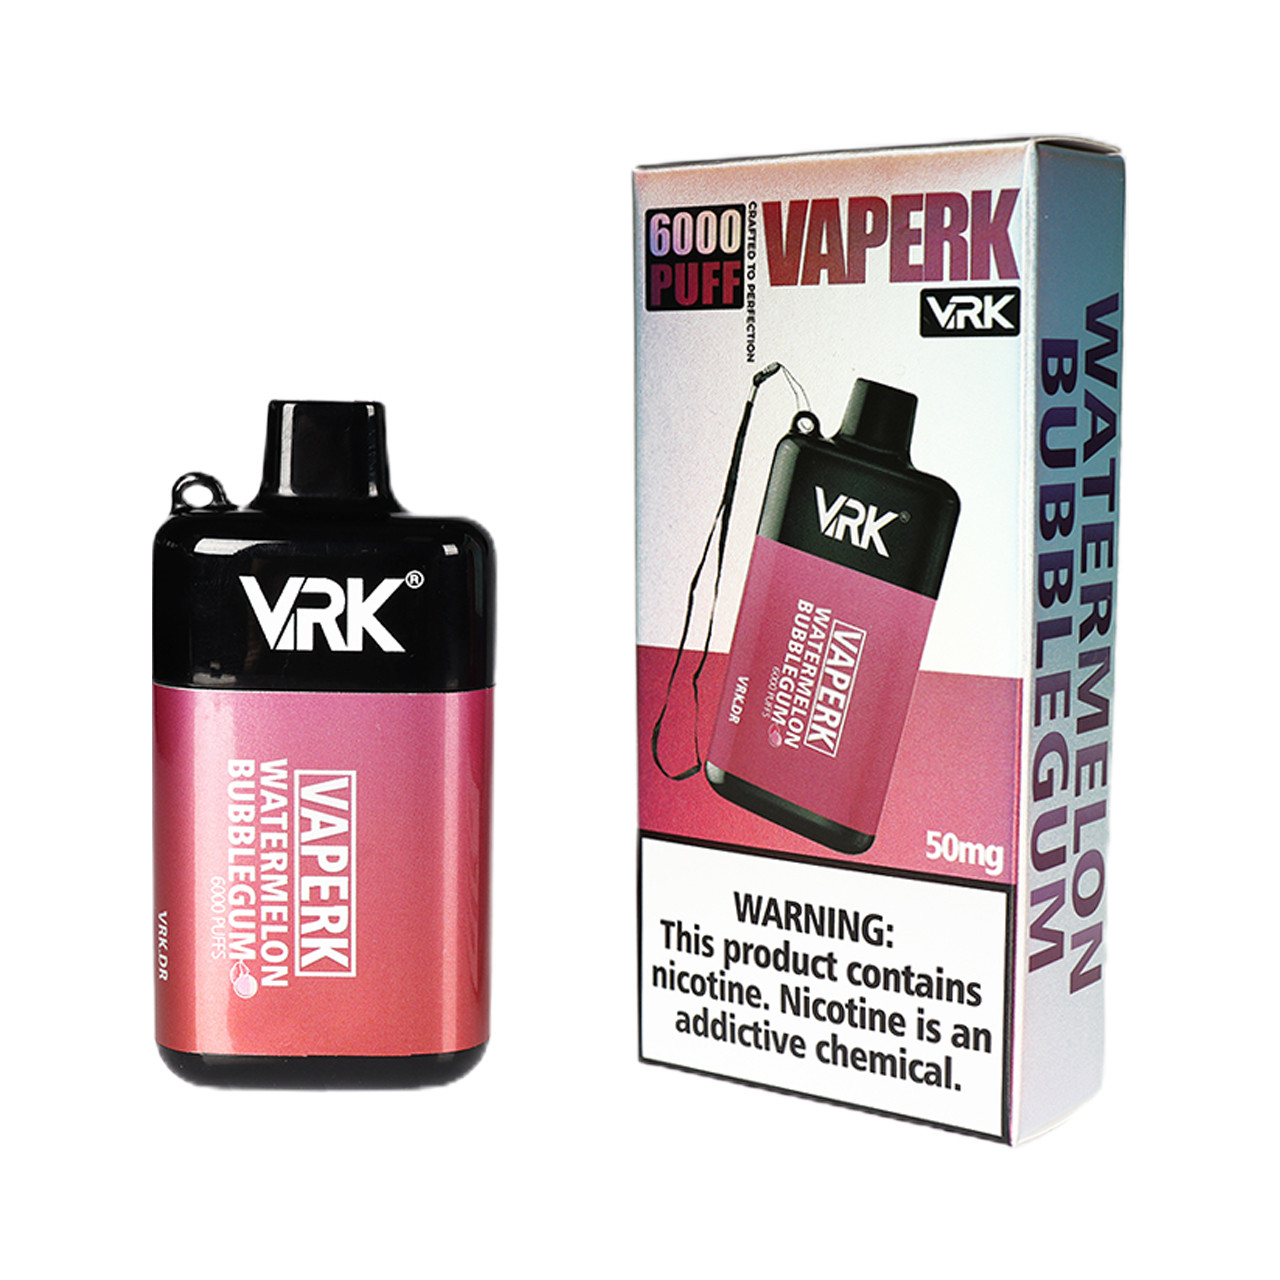 VRK Vaperk Disposable Device (6000 Puffs)-Watermelon Bubblegum